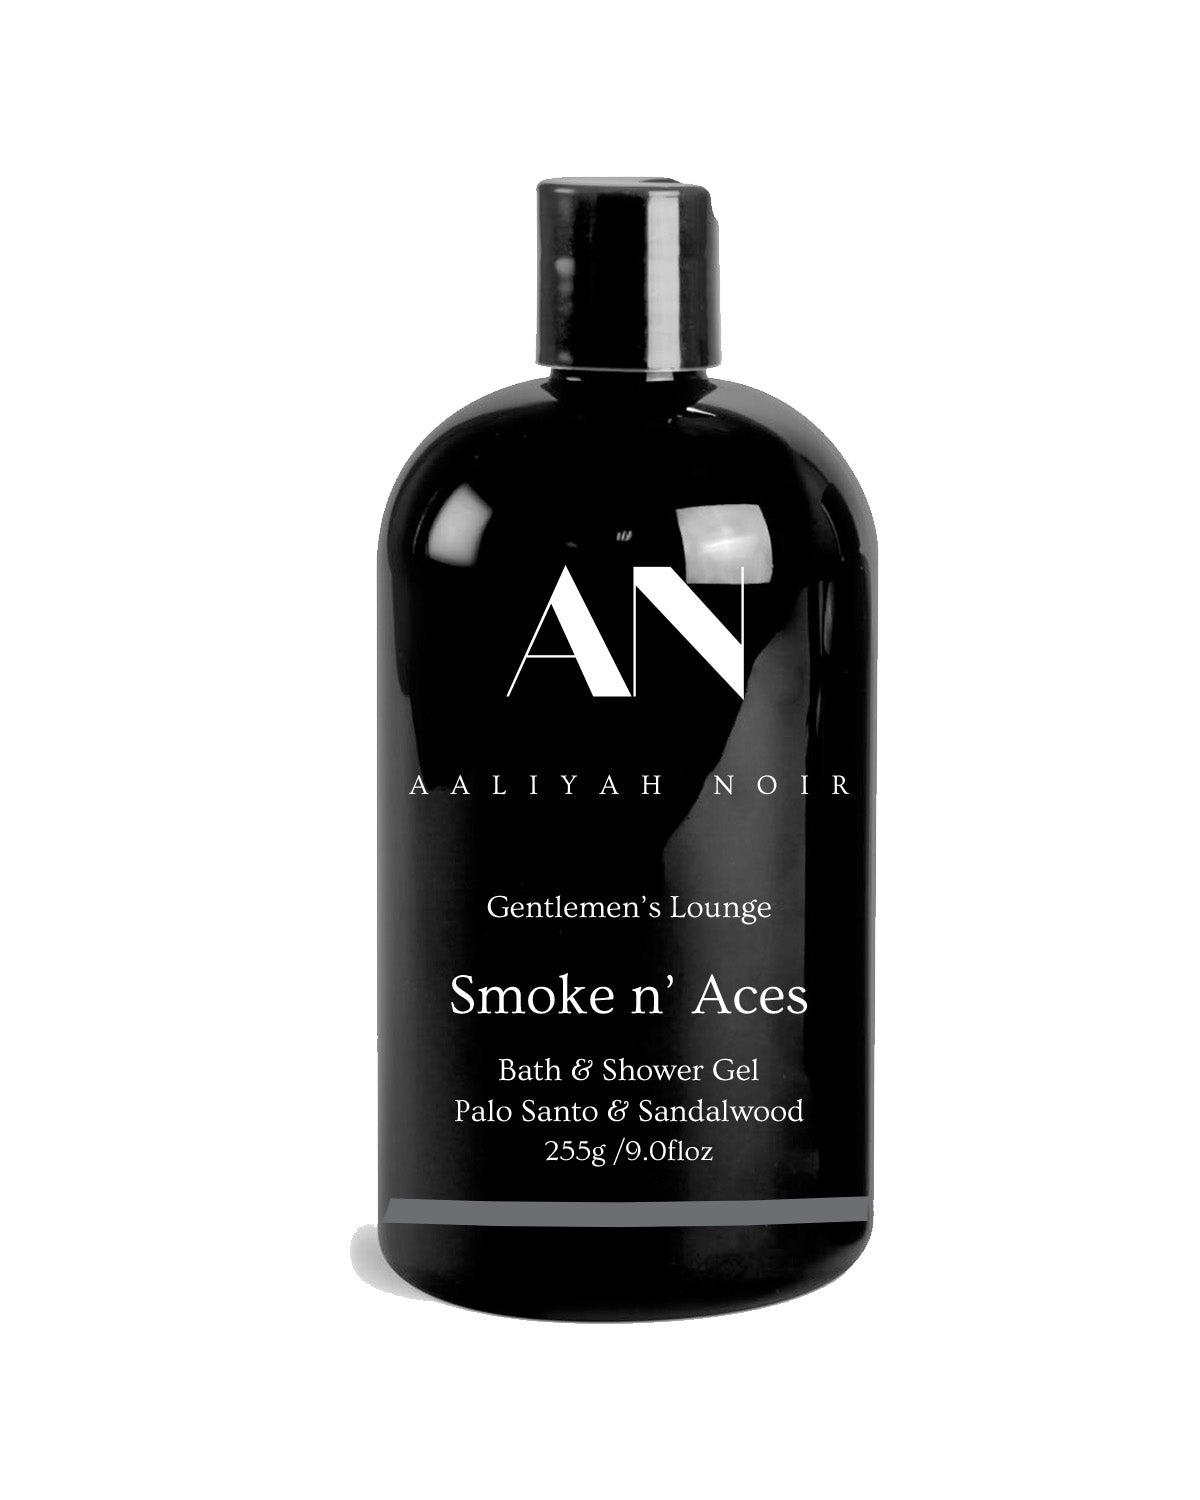 Smoke n' Aces Bath & Shower Gel